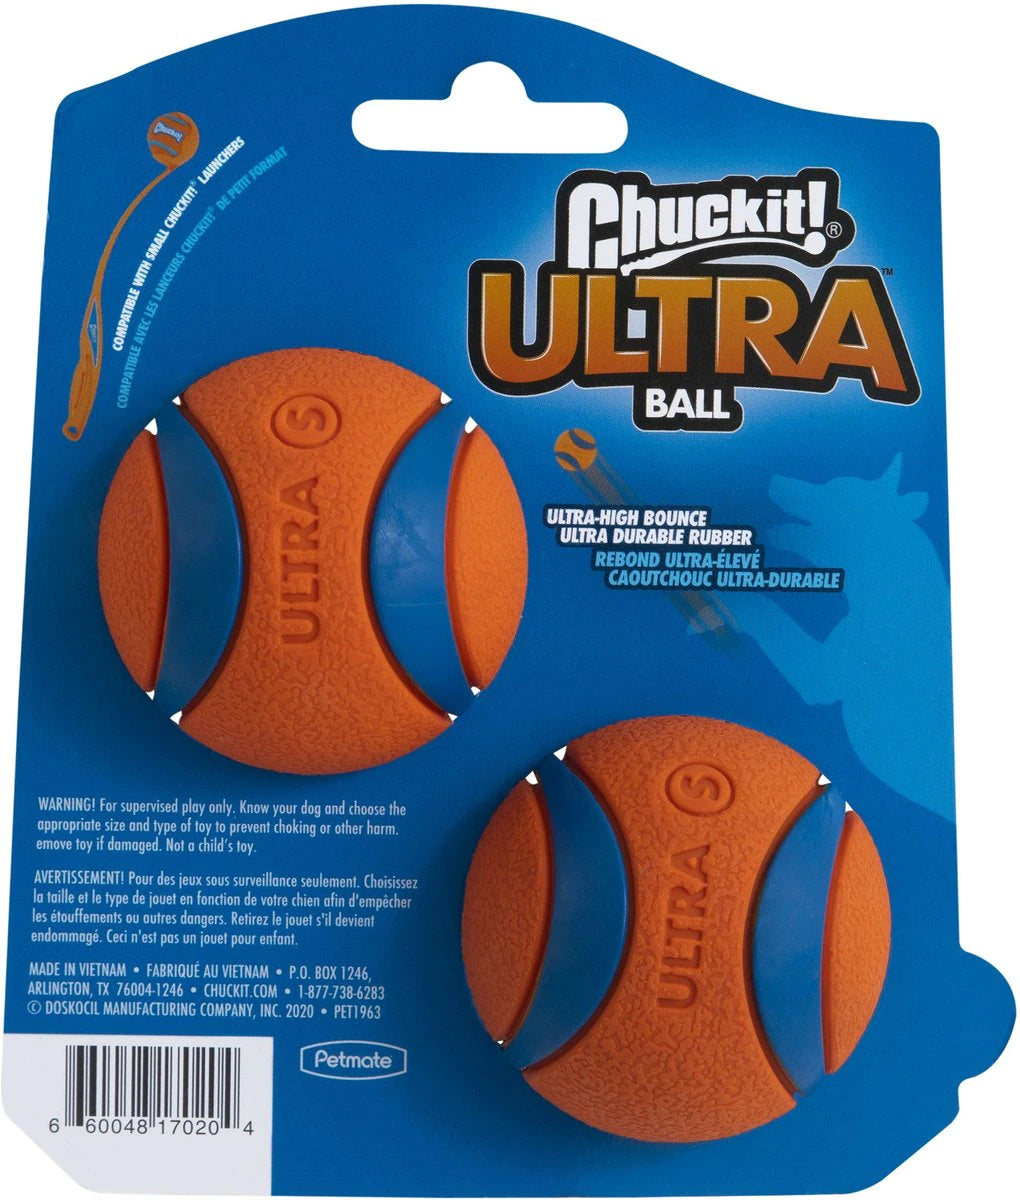 Chuckit! Ultra Rubber Balls - Medium